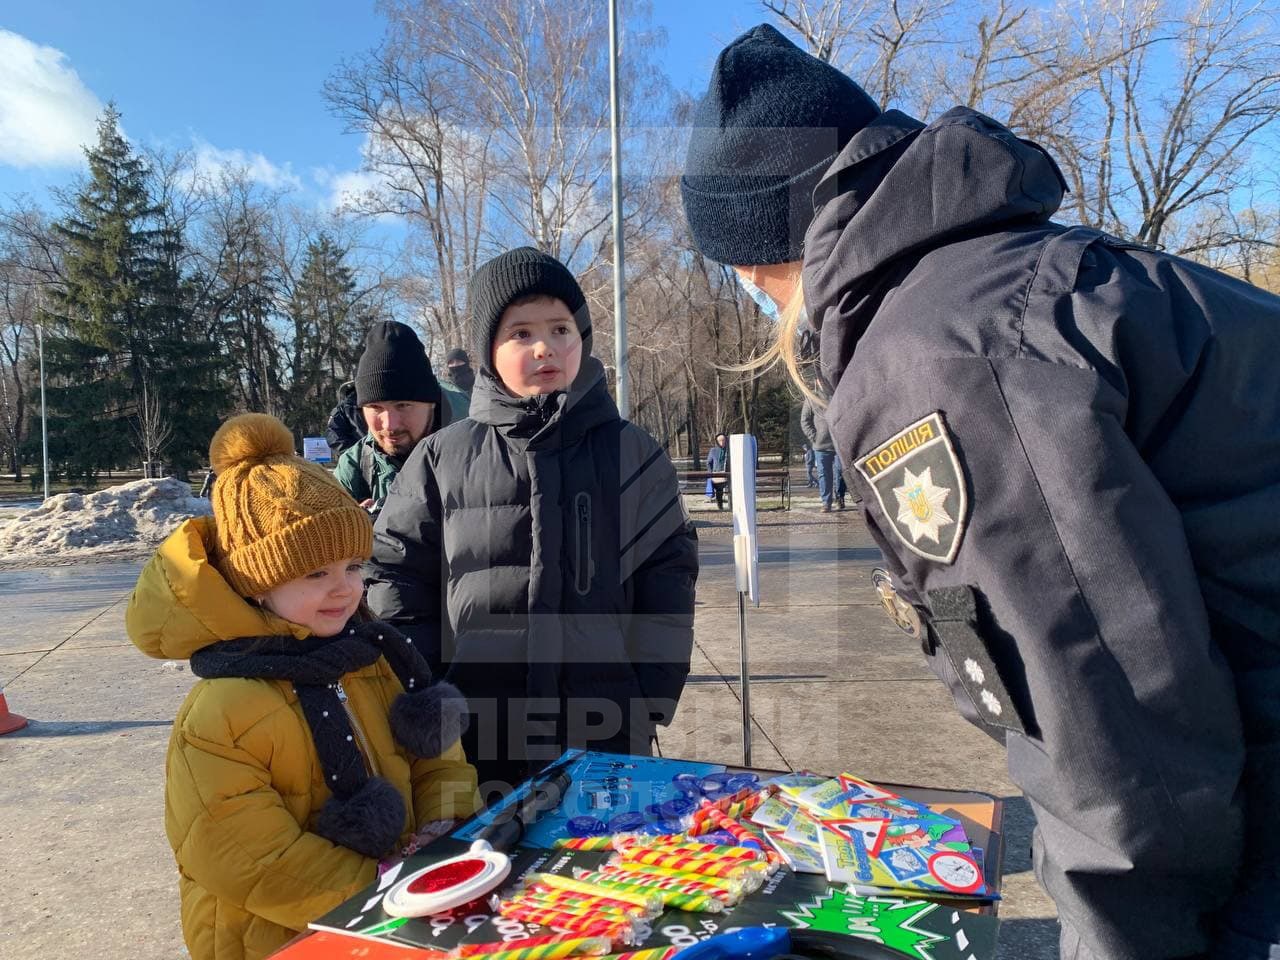 Розважально-пізнавальне Різдво: в одному з парків Кривого Рогу патрульні поліцейські влаштували вуличну акцію для малечі